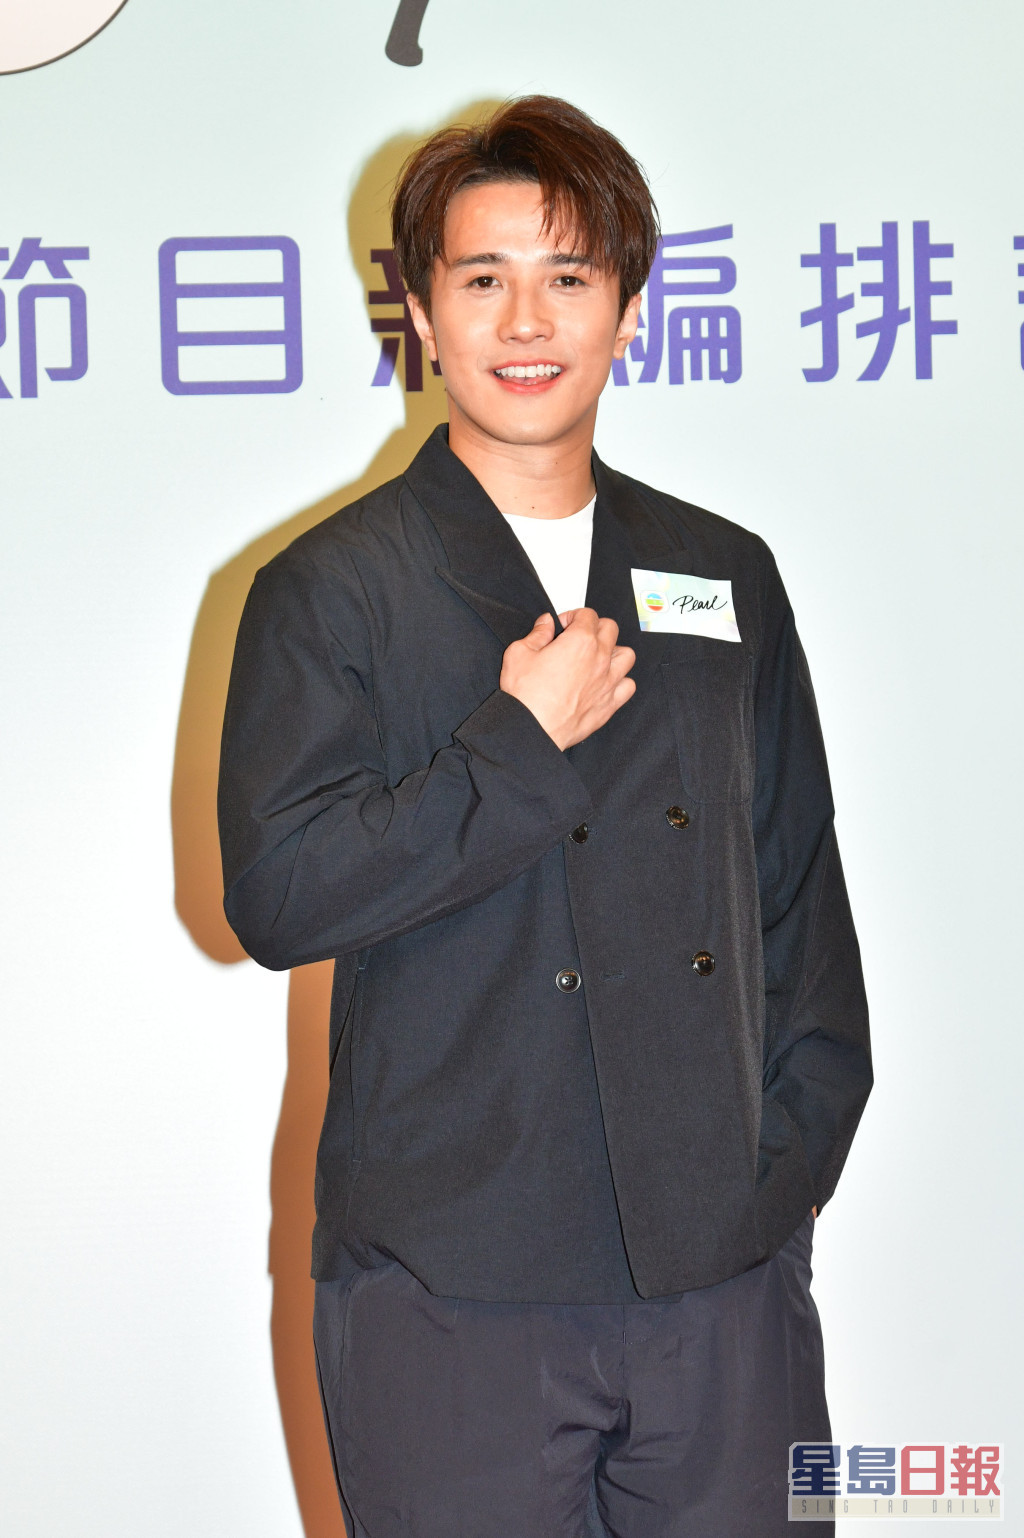 黄庭锋被TVB高层点名力捧，他表示看到报道后感到受宠若惊。